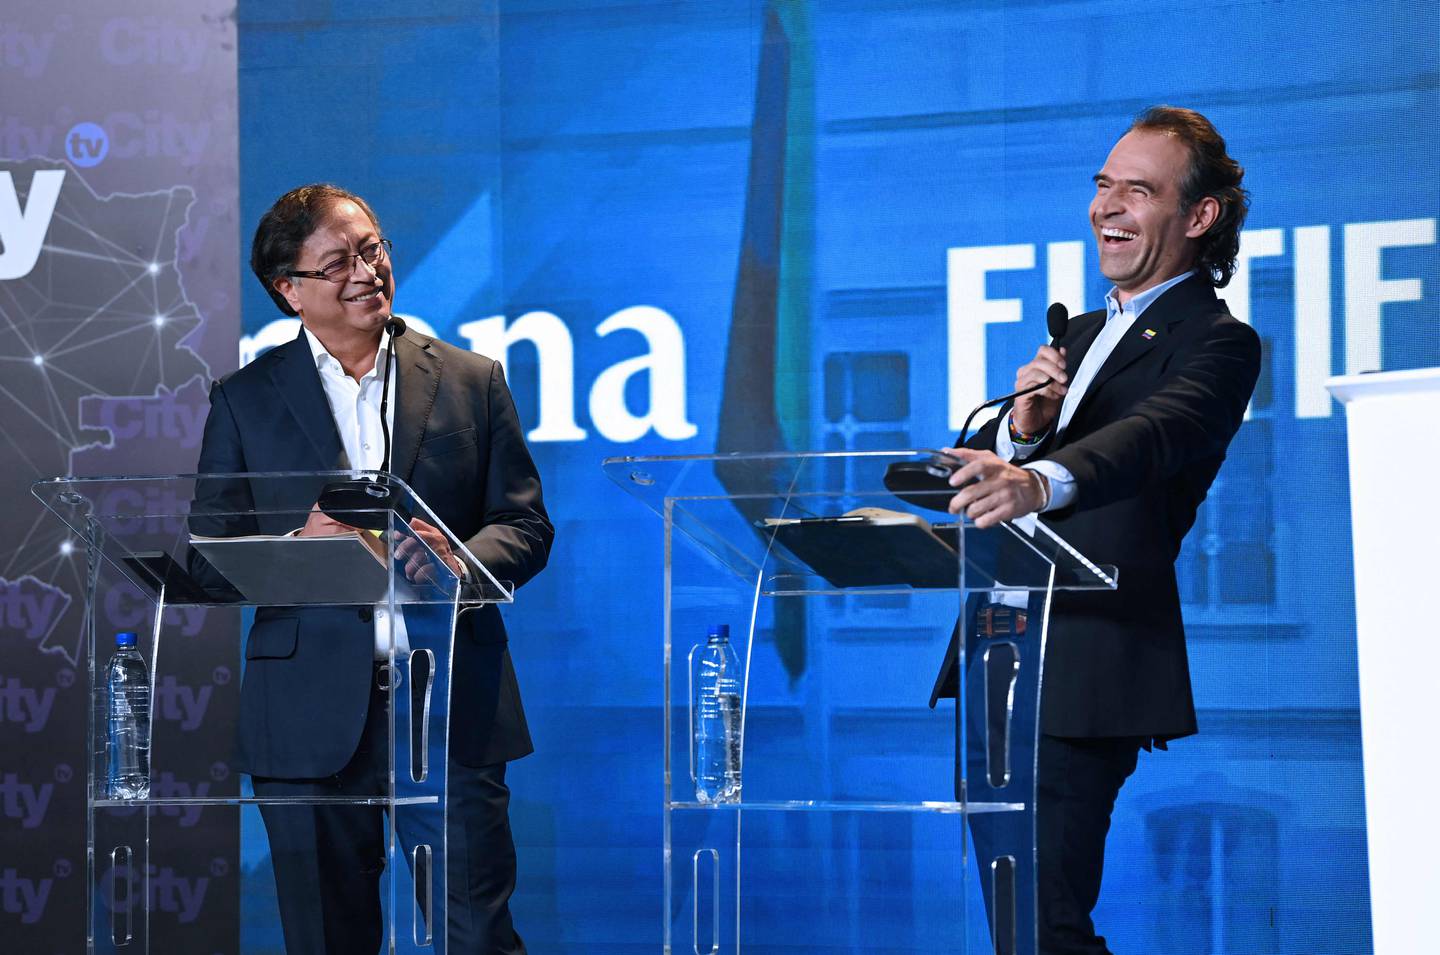 Presidentkandidatene Gustavo Petro (t.v.) og Federico Gutierrez (t.h.) møttes til debatt før søndagens valg. De to ligger best an på målingene.